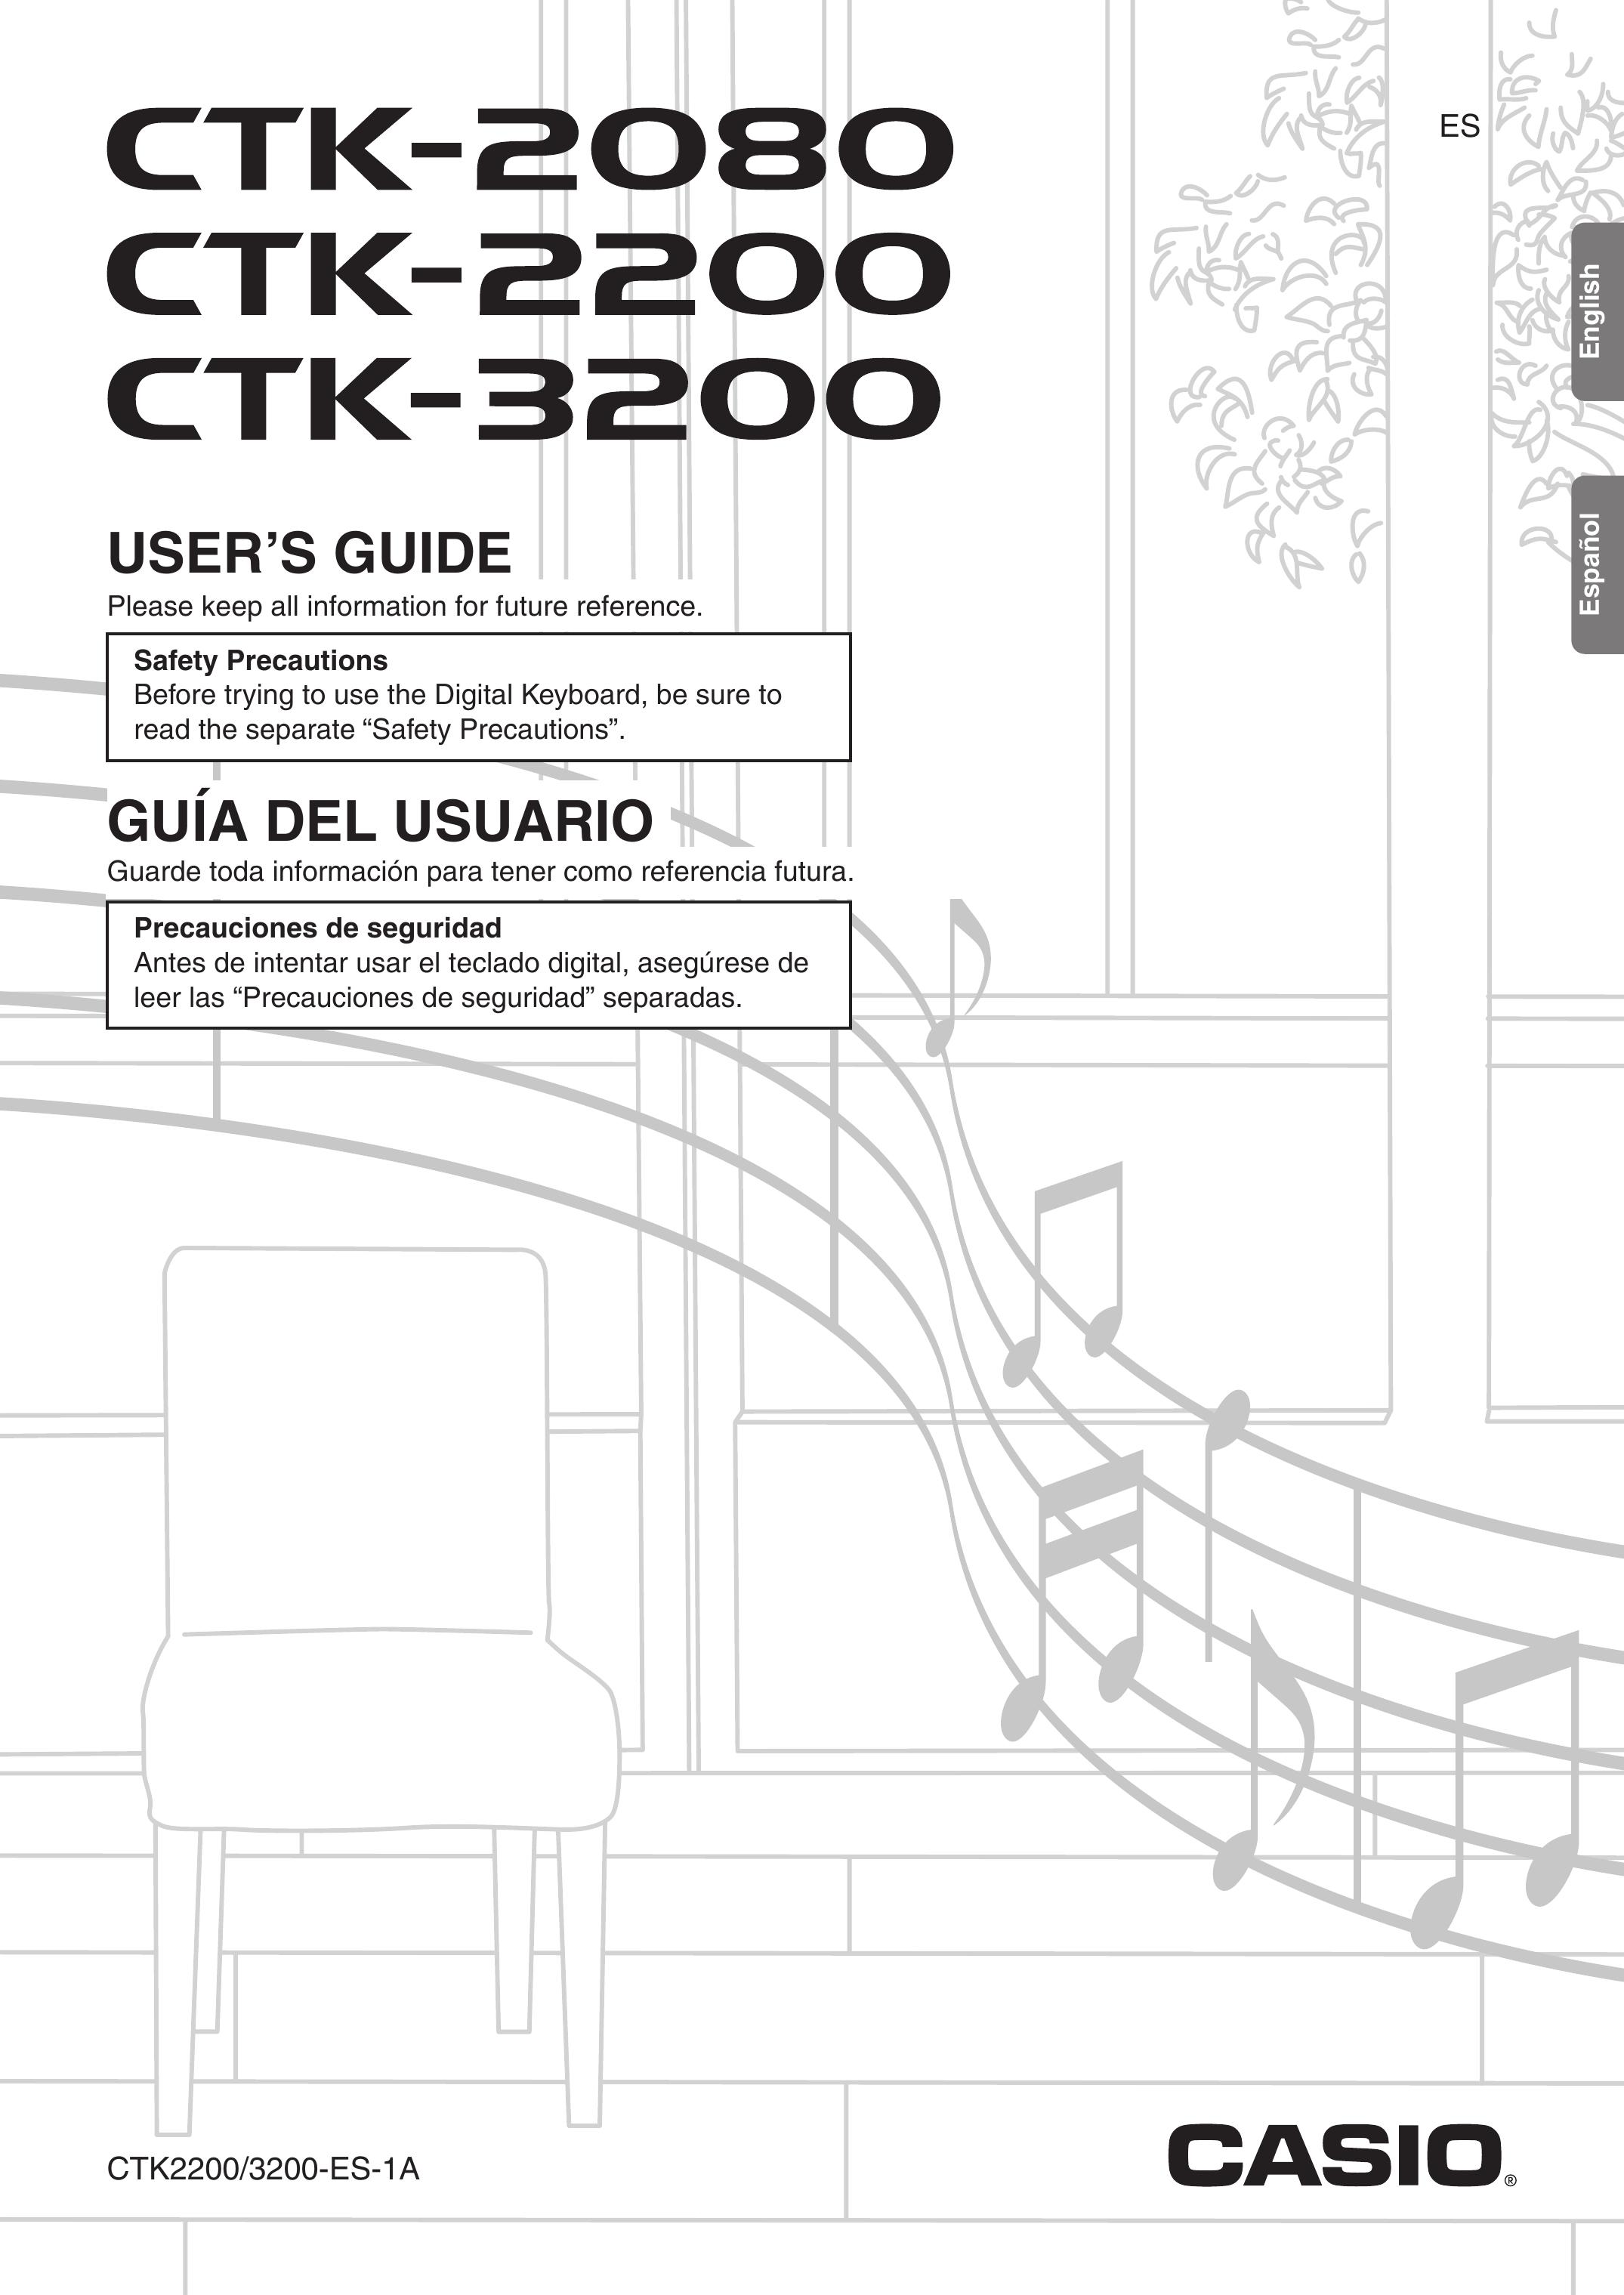 Casio CTK-2080 Electronic Keyboard User Manual